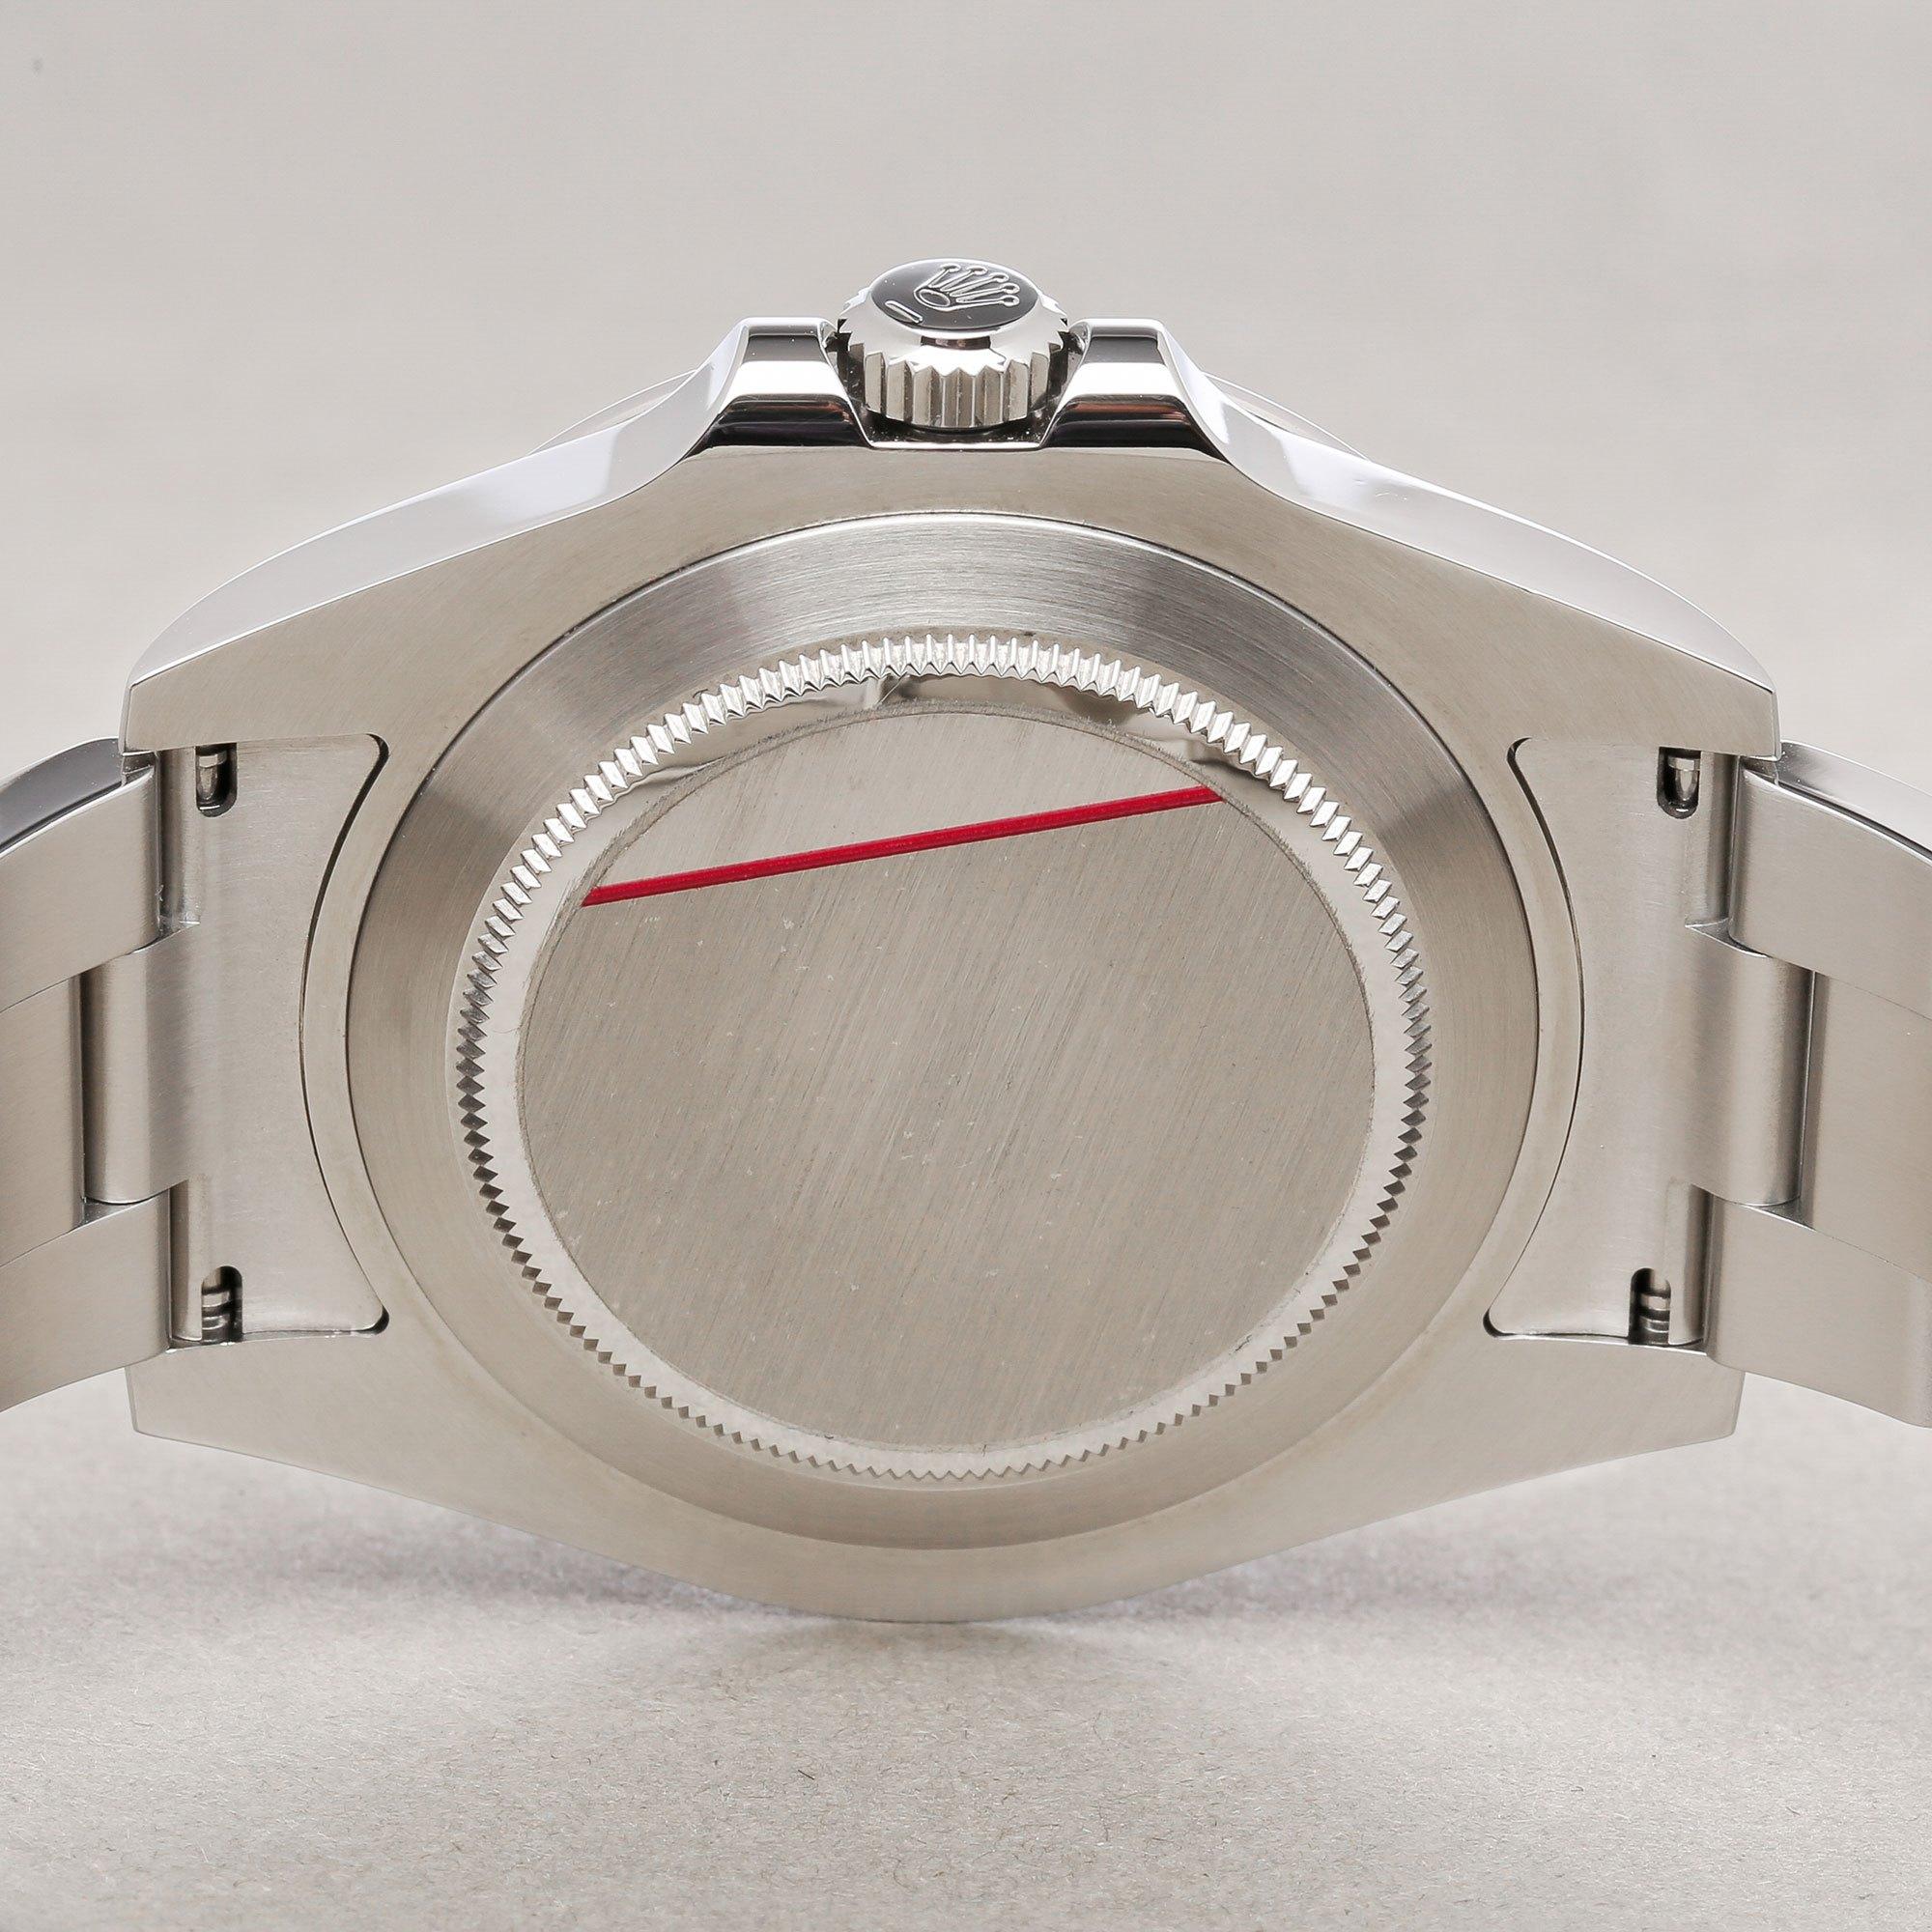 Rolex Explorer II 0 216570 Men's Stainless Steel 0 Watch 3